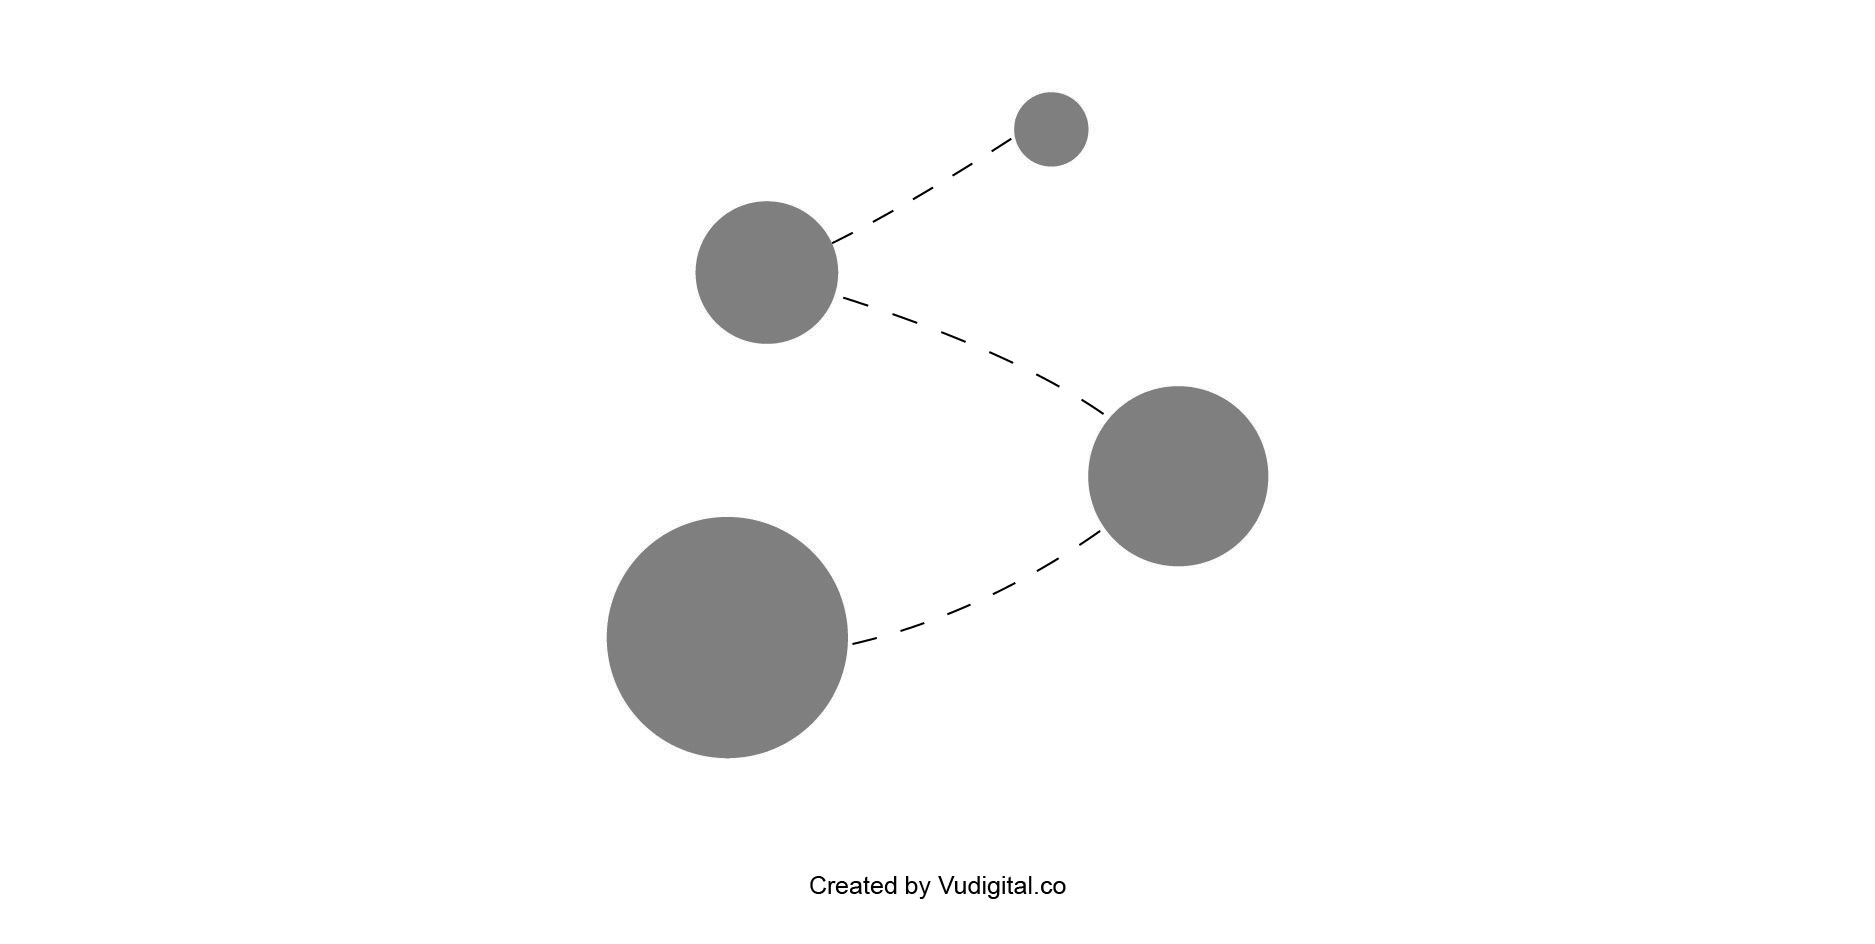 Tính chuyển động trong thiết kế (ảnh: vudigital.co)